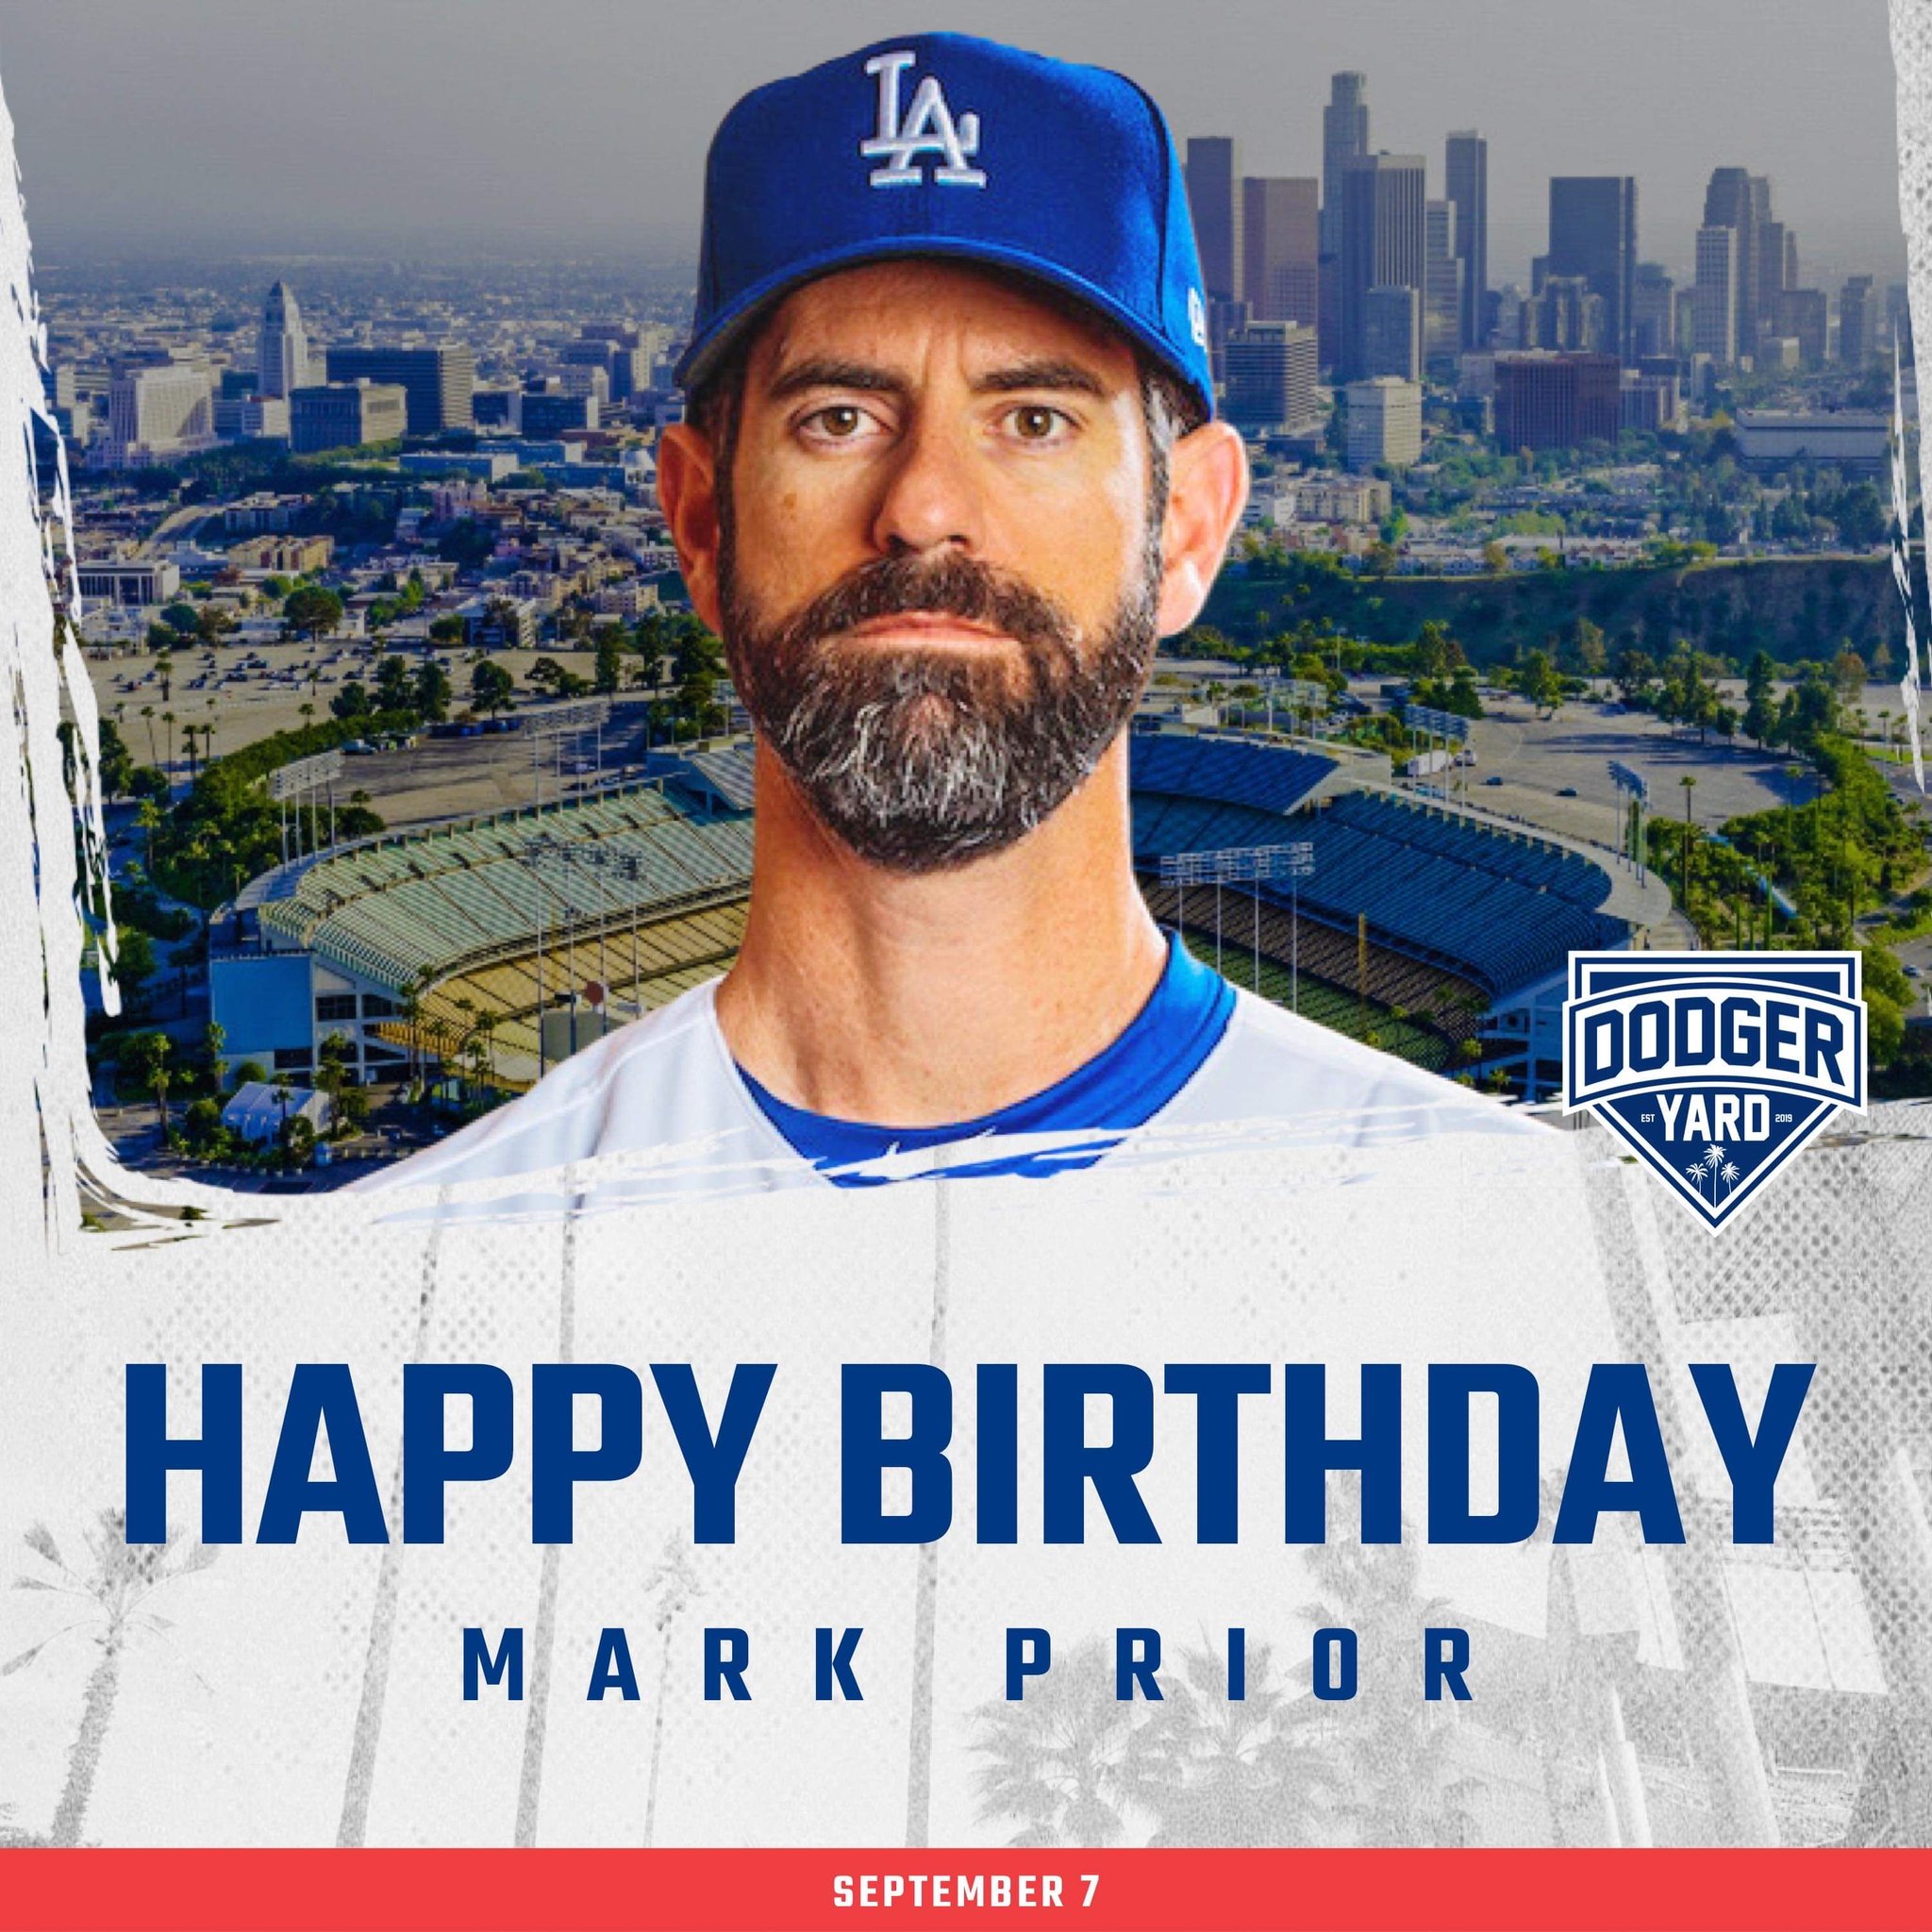 Happy birthday, Mark Prior! 